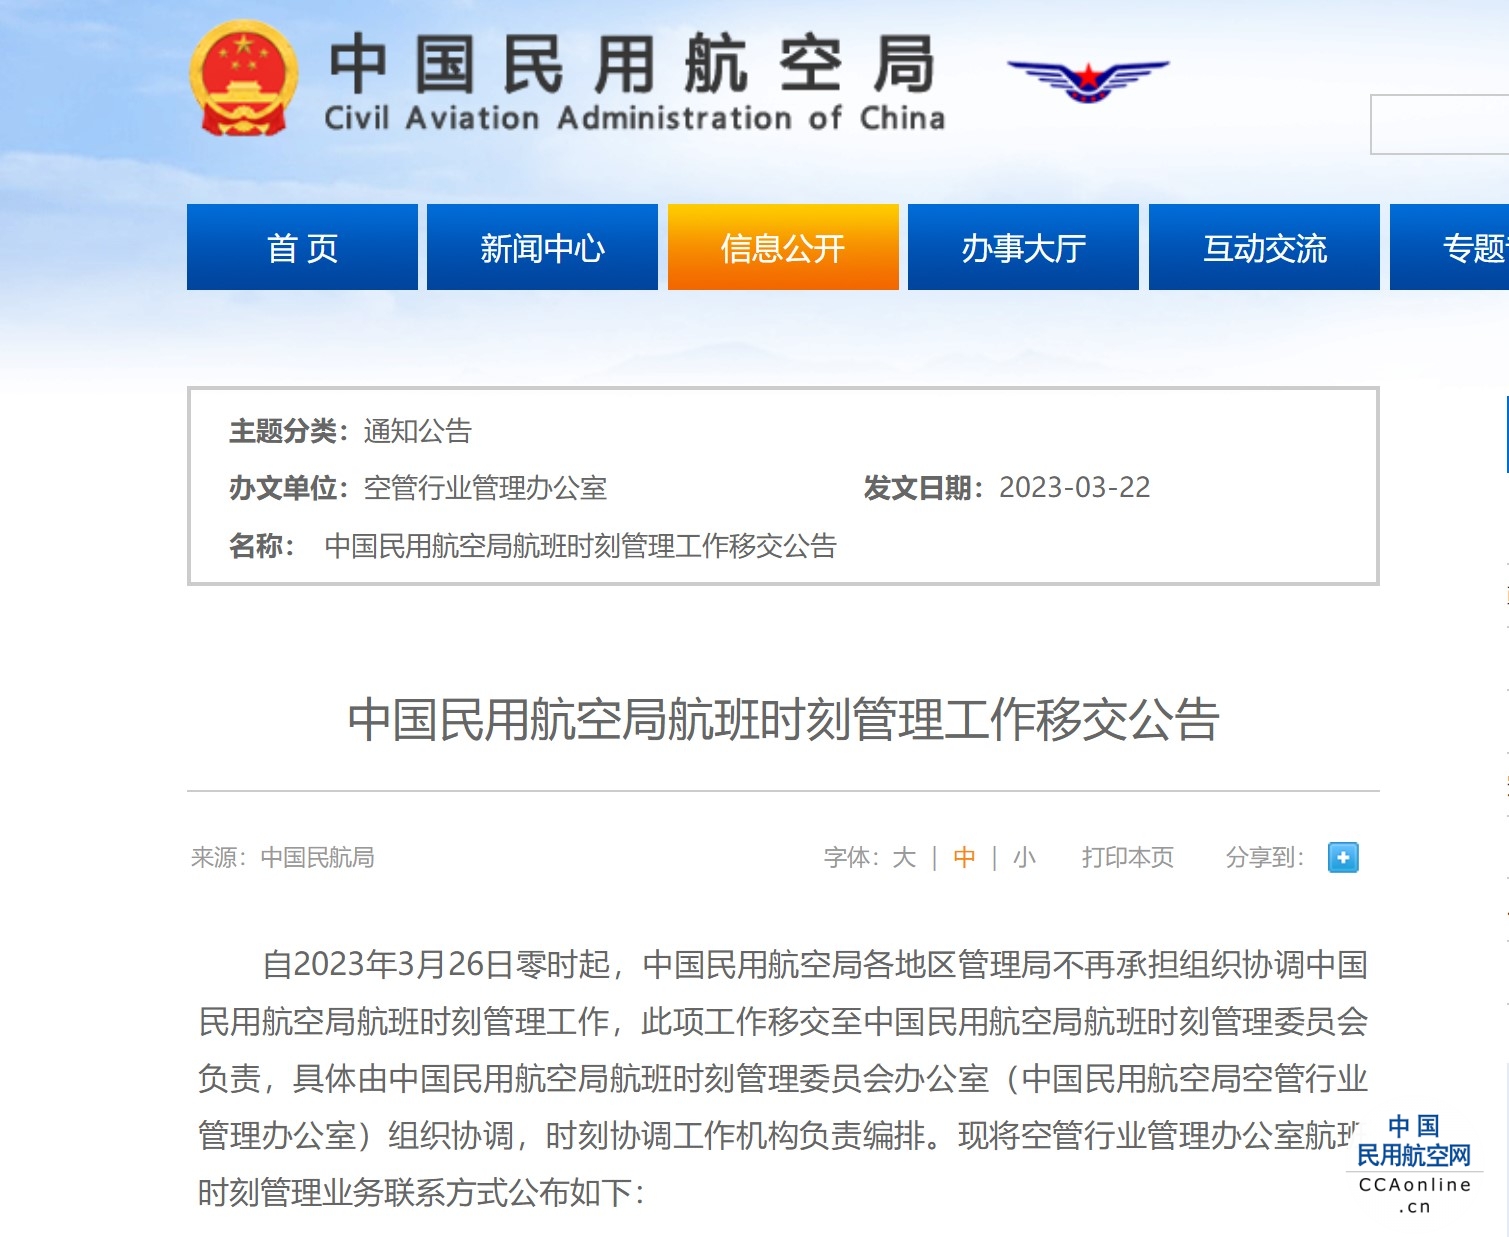 中国民用航空局航班时刻管理工作移交至中国民用航空局航班时刻管理委员会负责